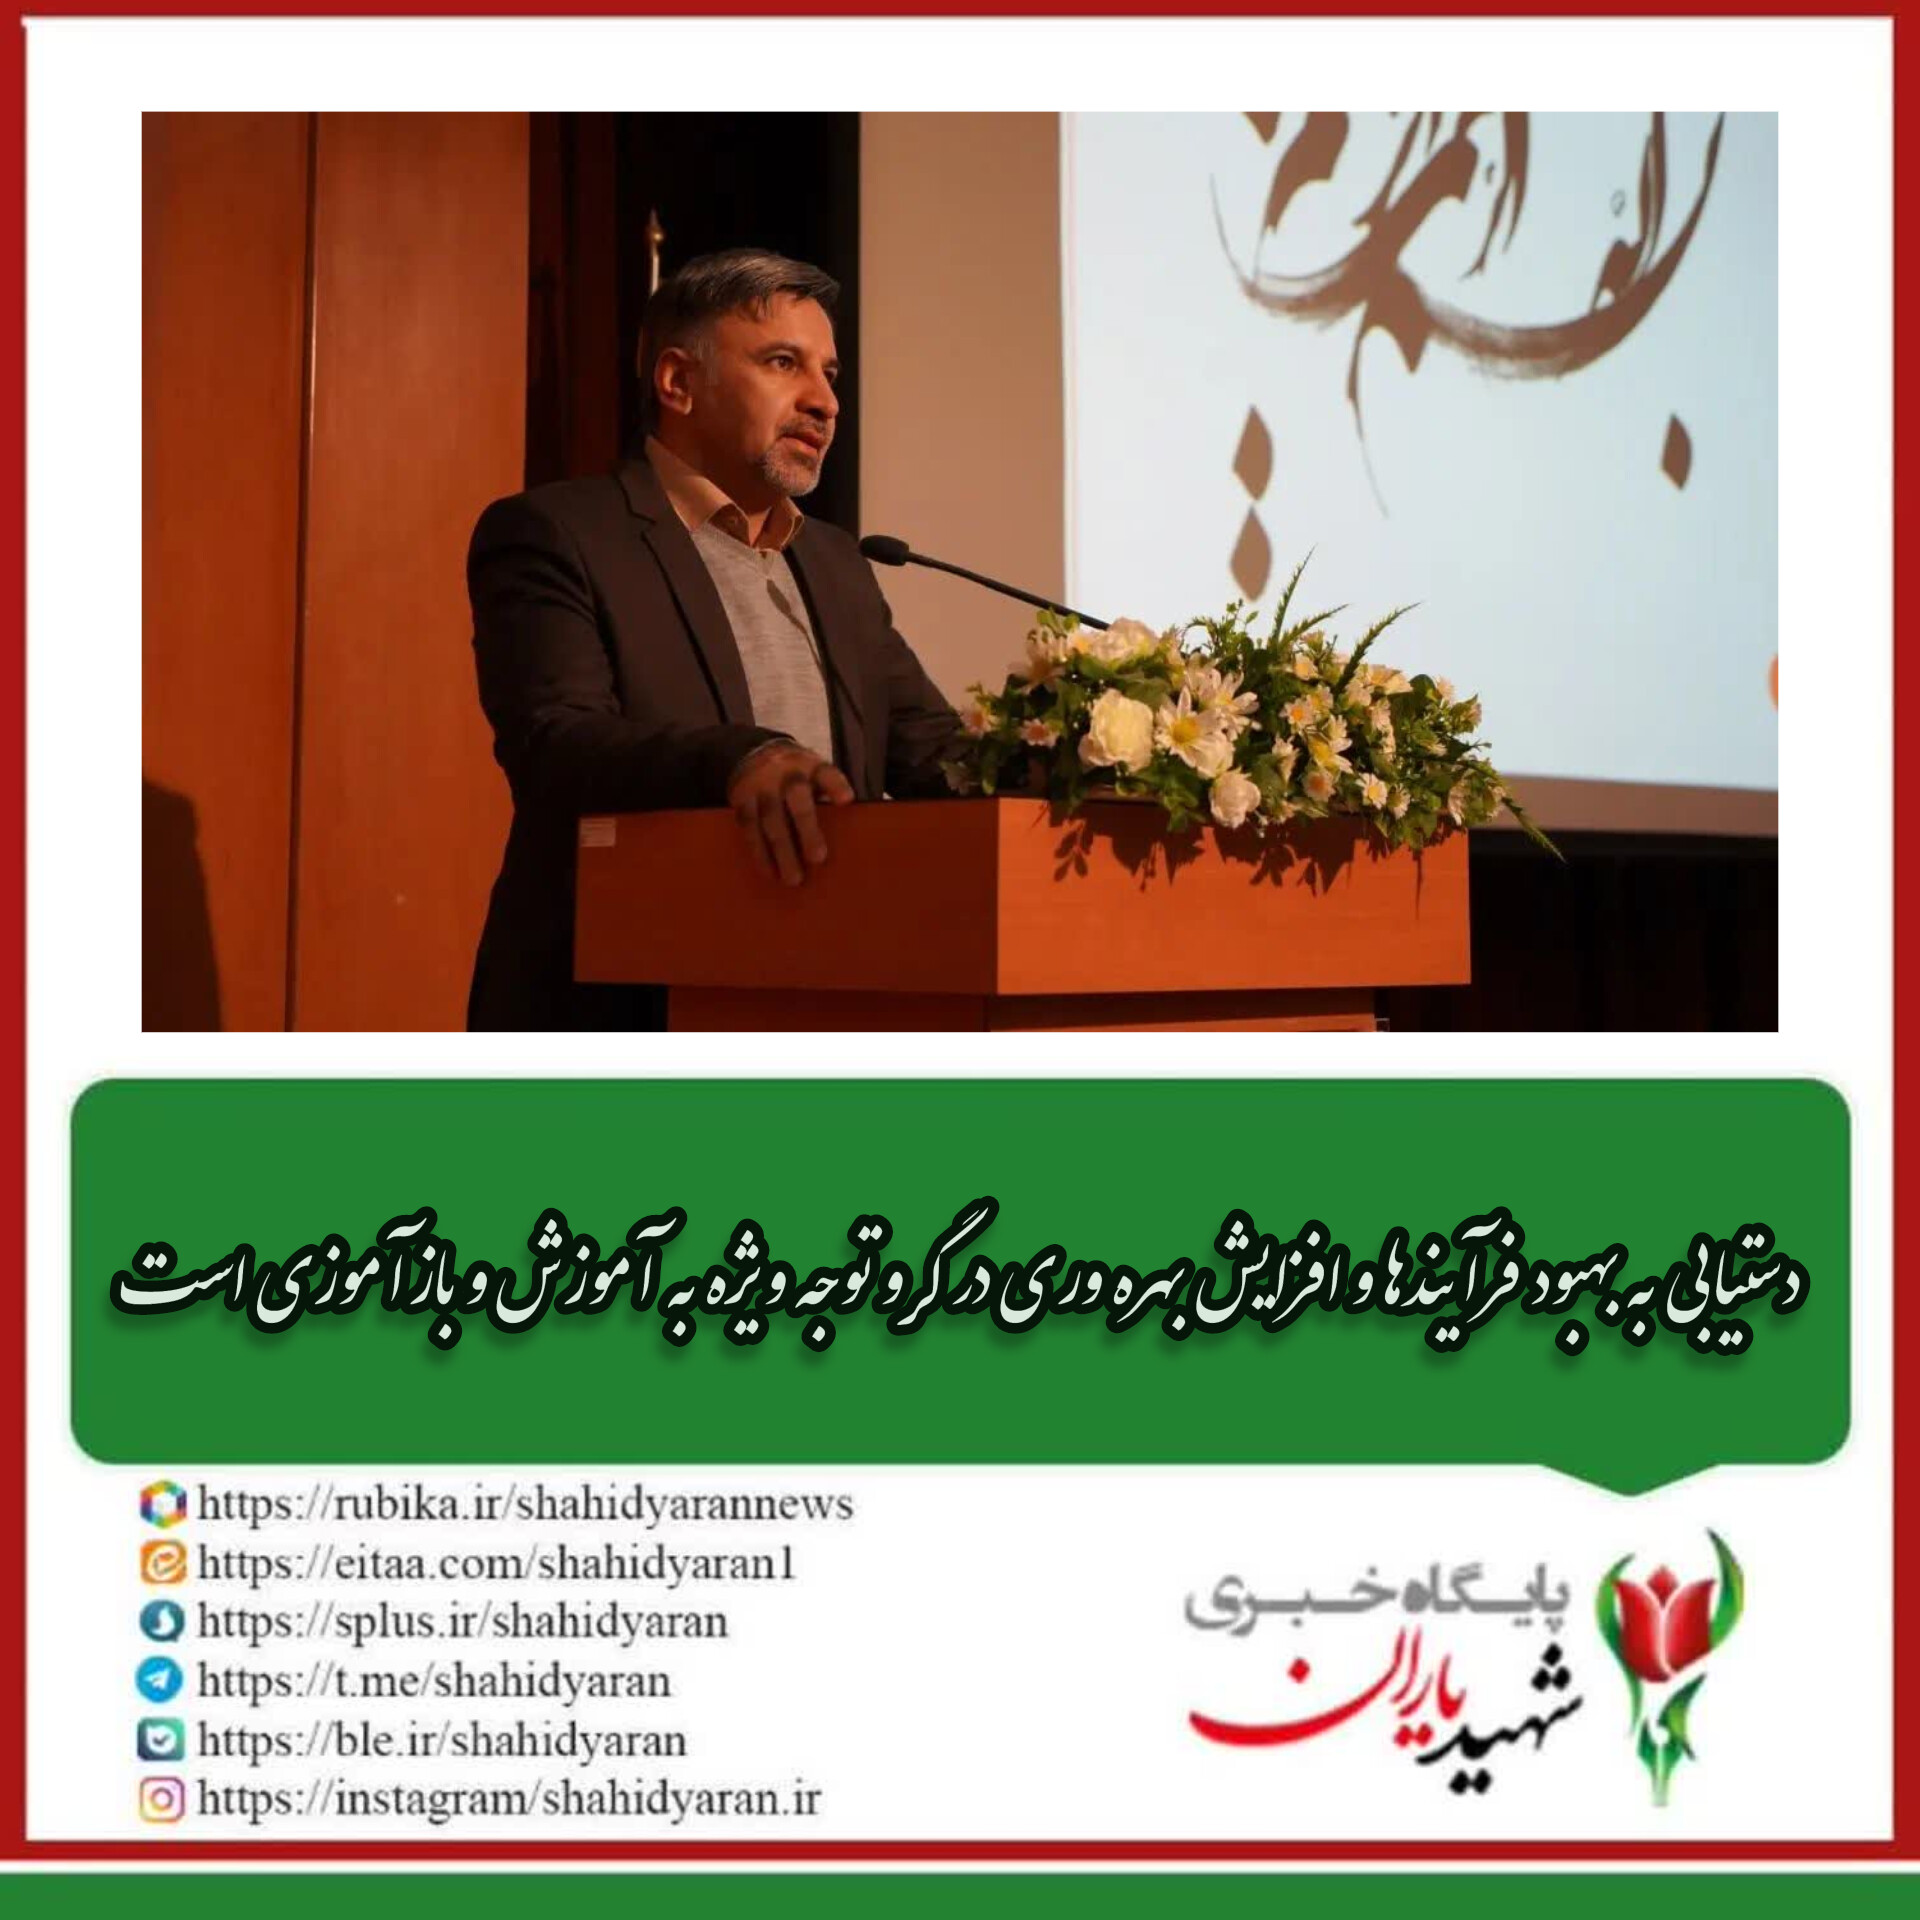 رئیس سازمان مدیریت وبرنامه ریزی استان کردستان: